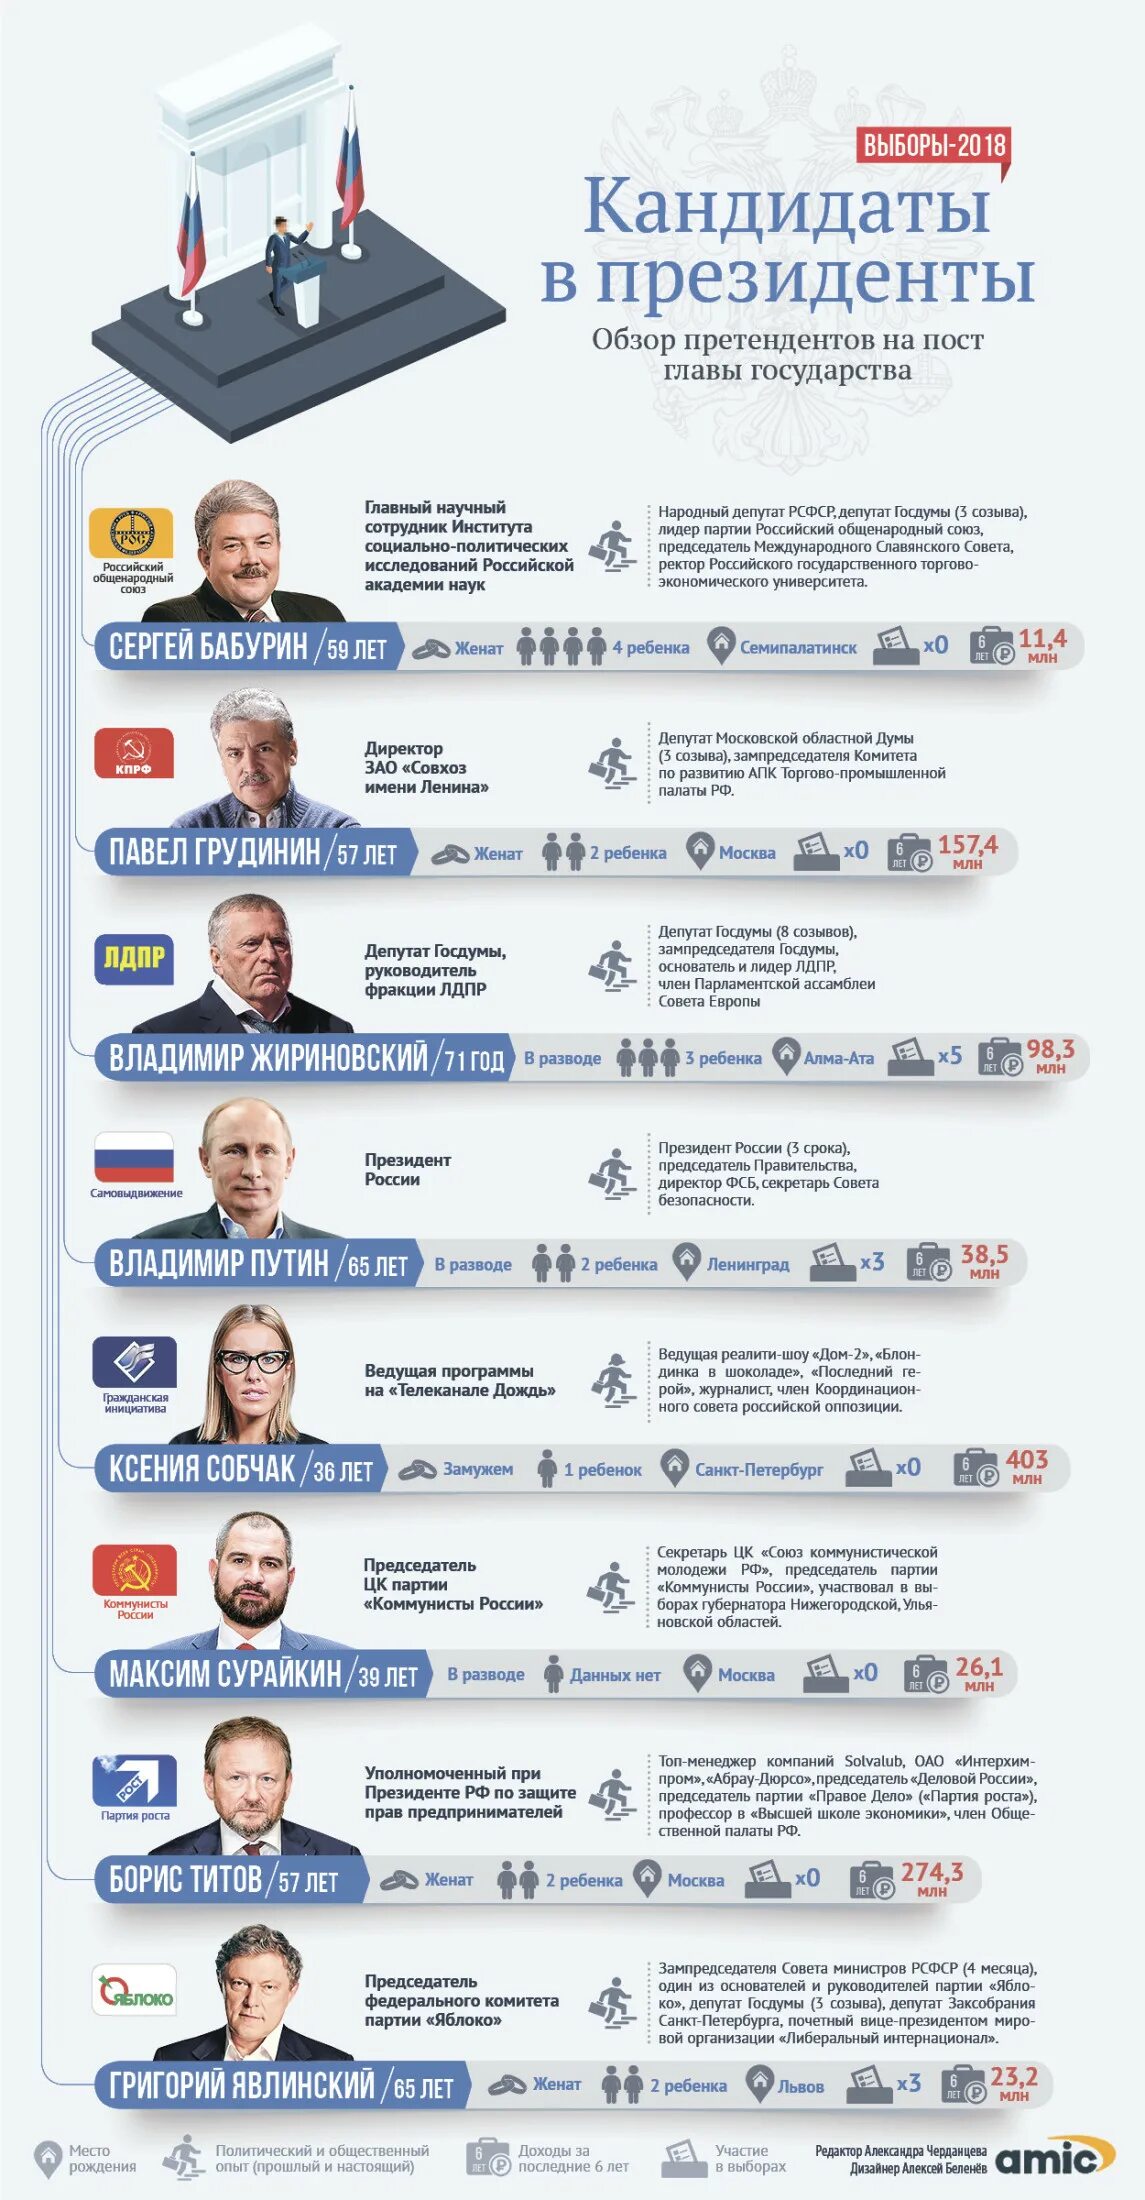 Выборы президента России 2018 кандидаты.